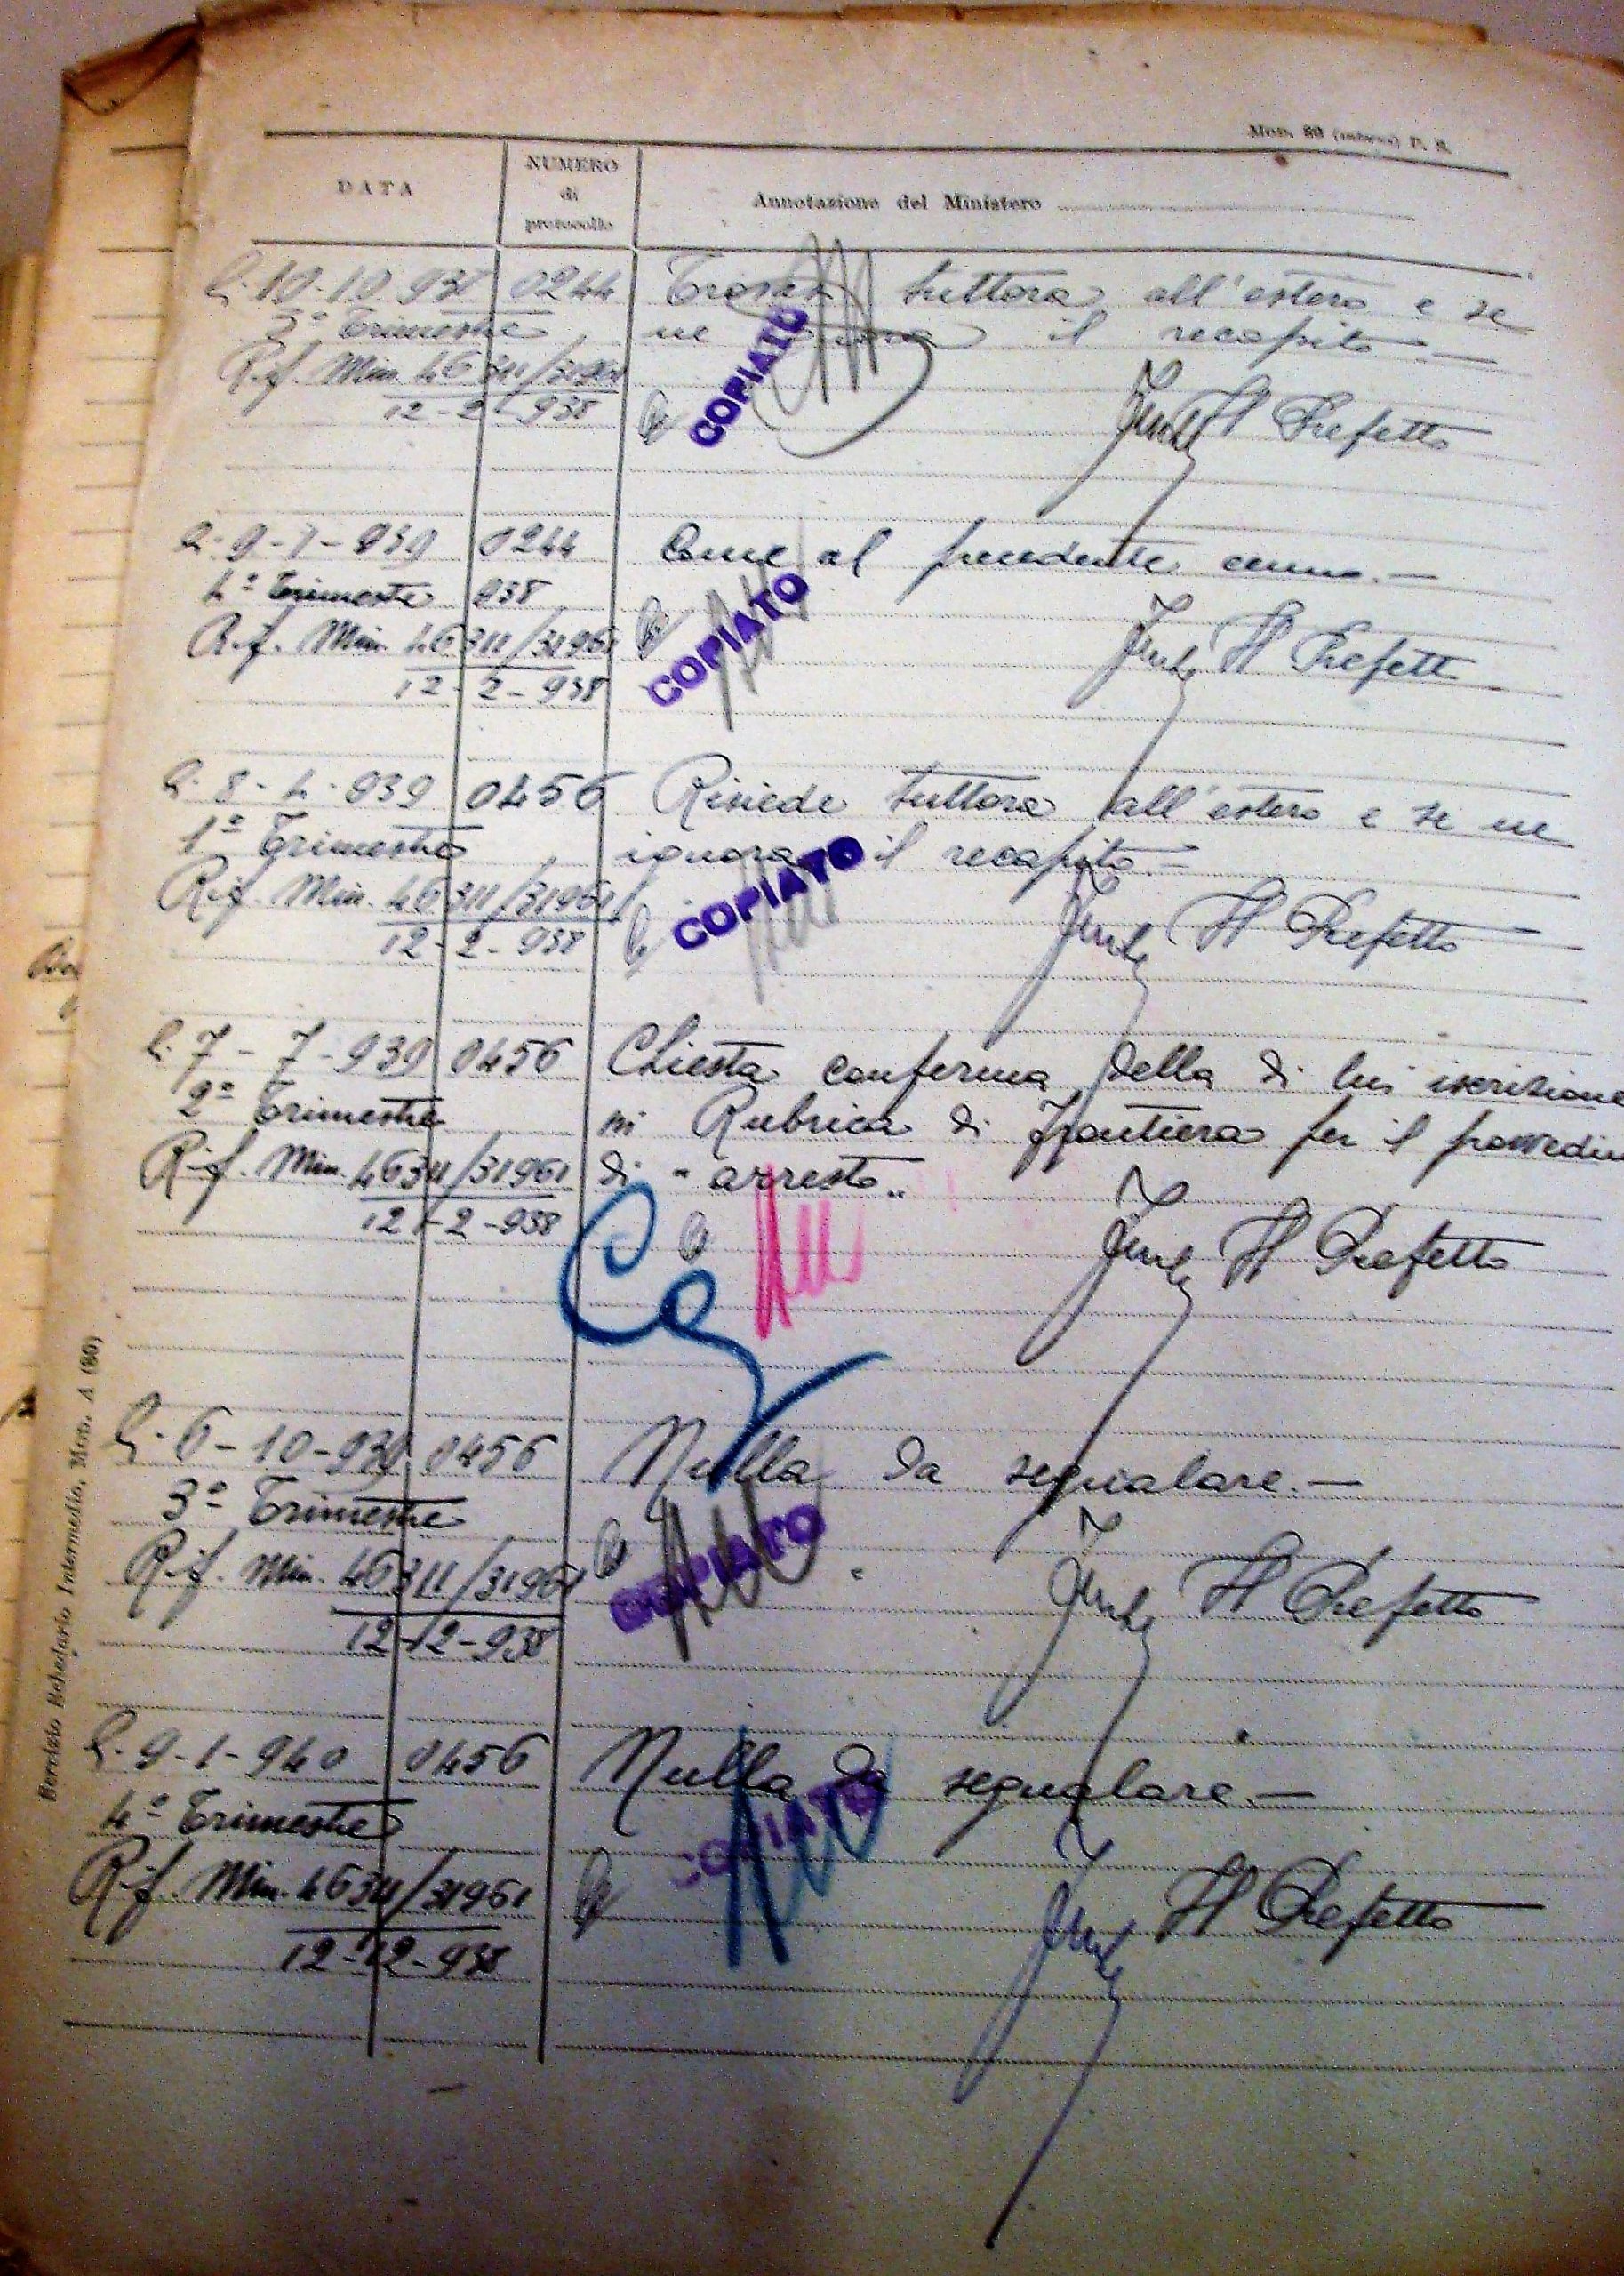 Le segnalazioni cronologiche tra il '37 e il '40 nel fascicolo personale di Agostino Pietrobuoni. Archivio di Stato di Bologna.